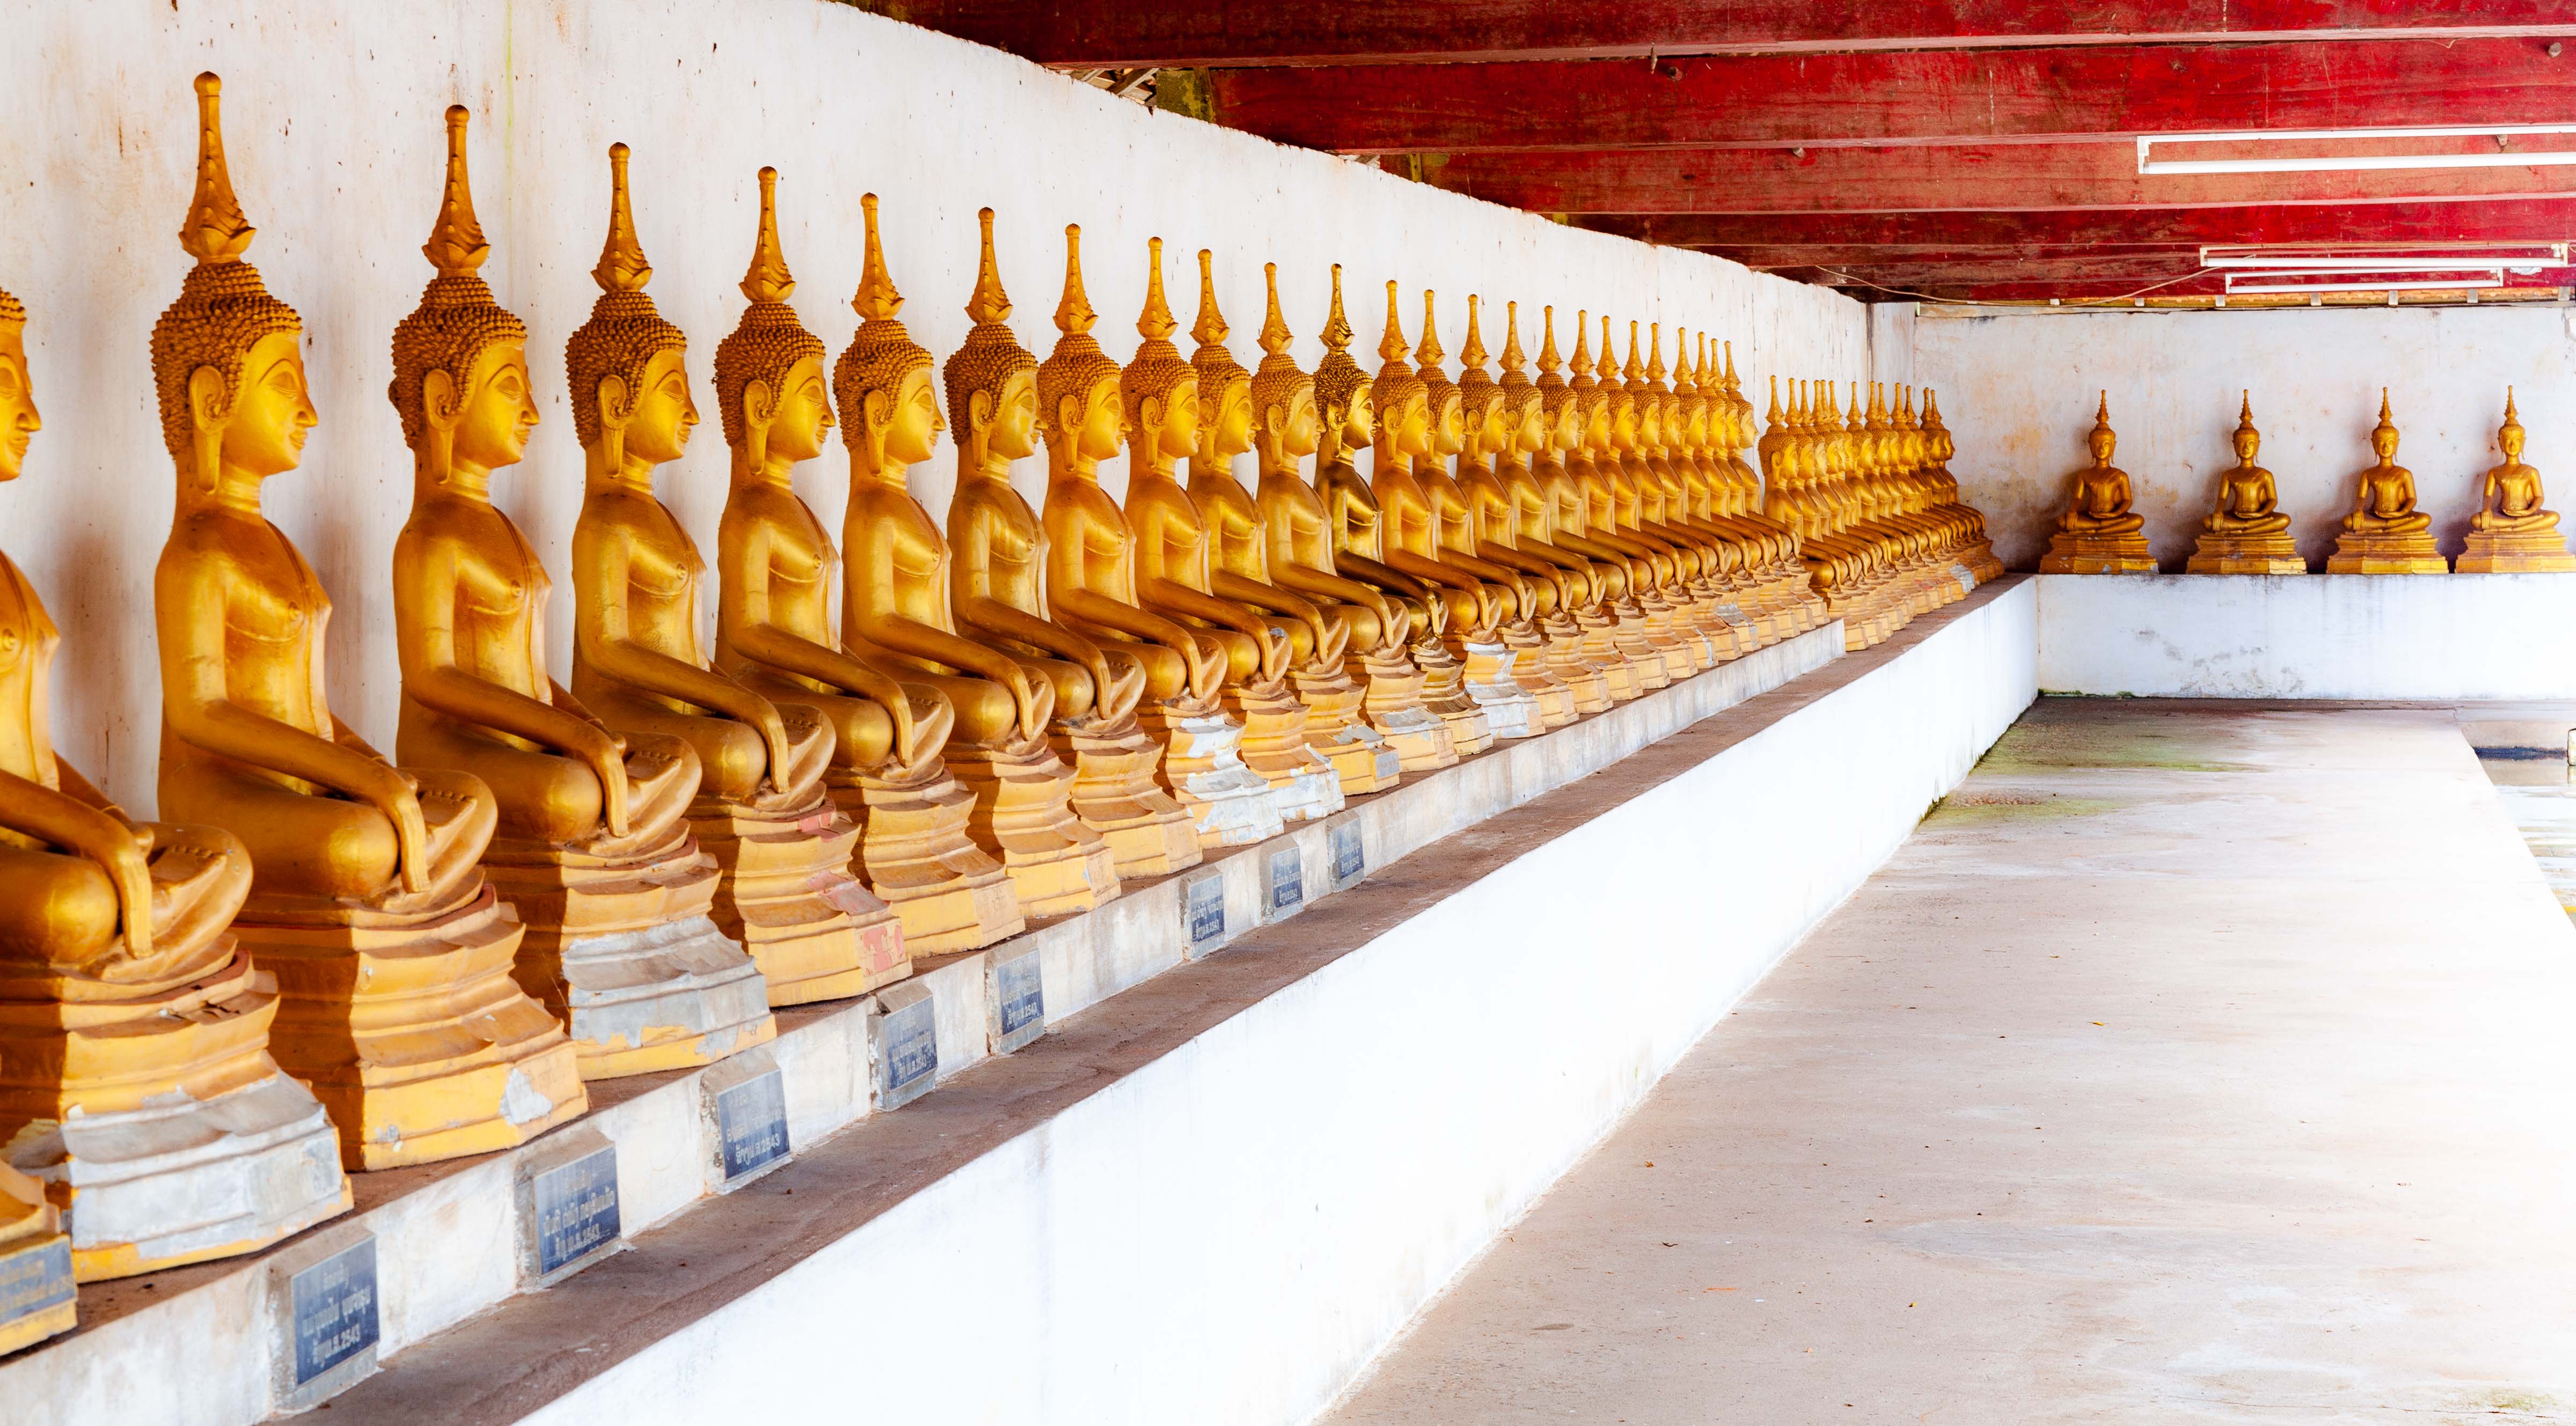 Laos, Savannakhet Prov, Buddhas, 2011, IMG 4184